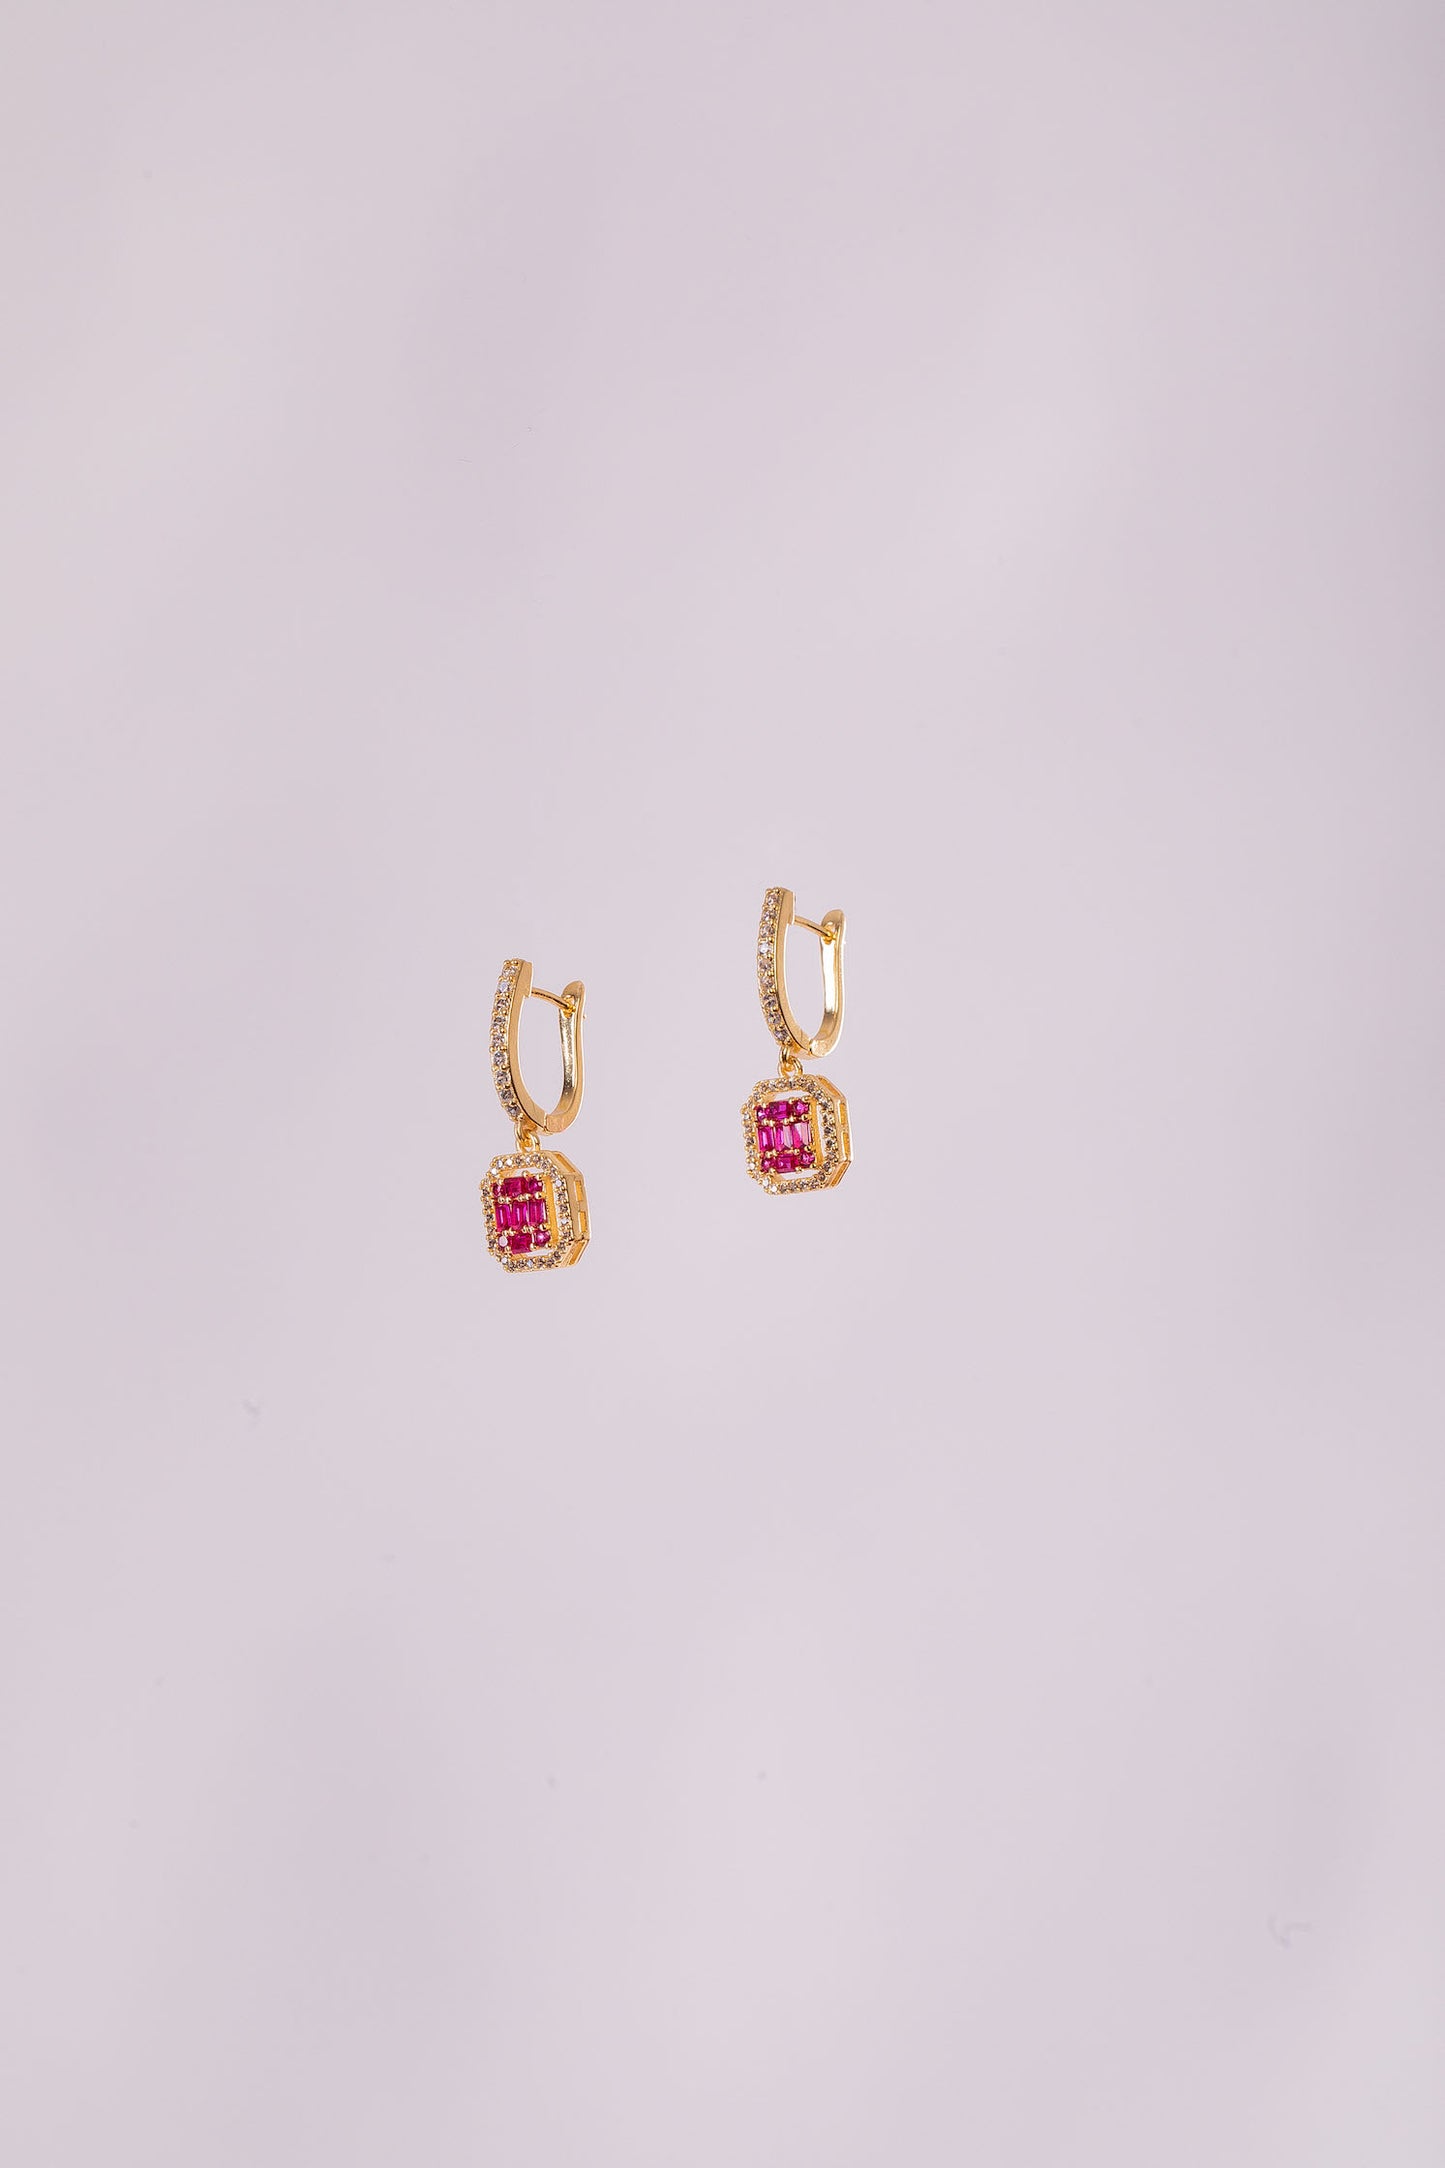 The Ruby Earrings